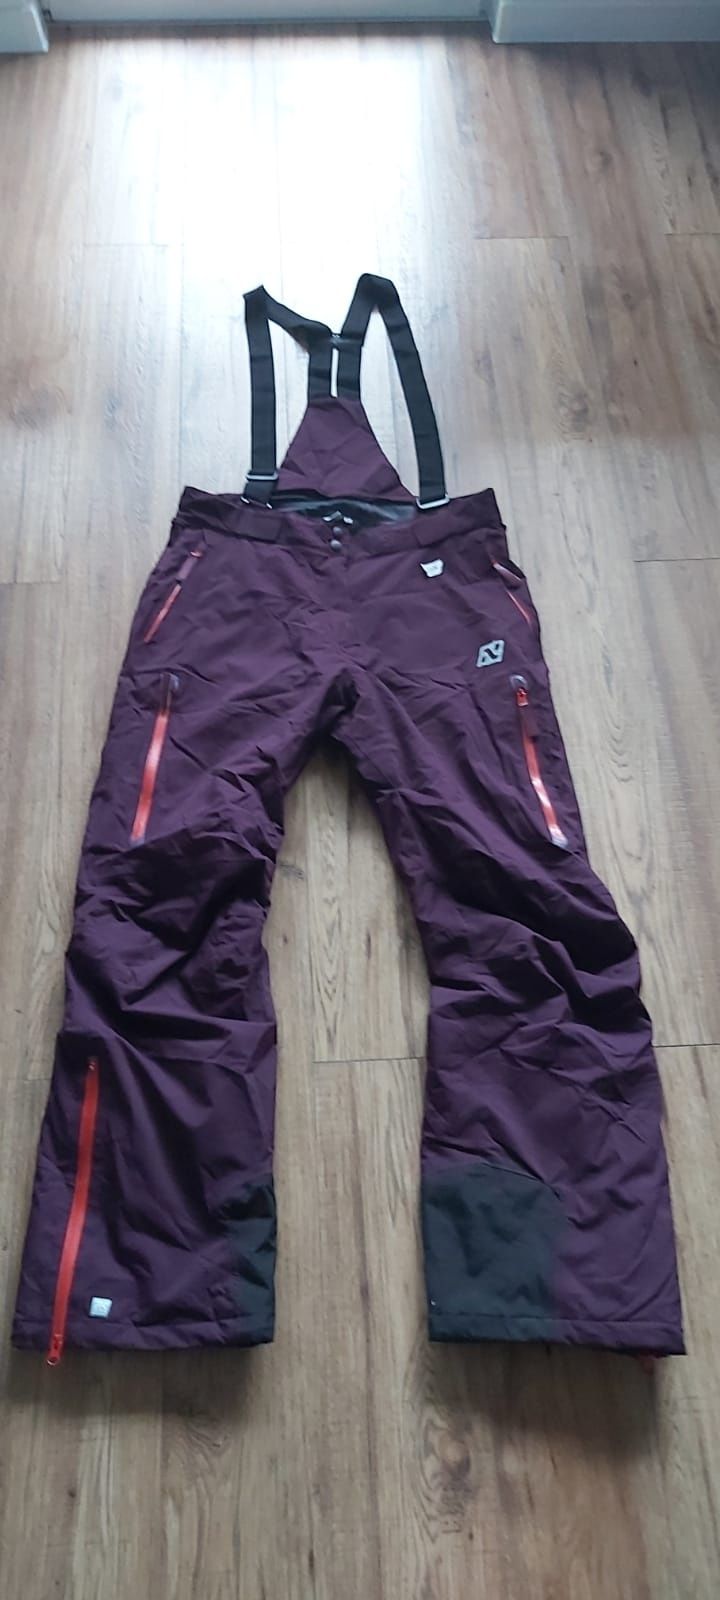 Damskie spodnie narciarskie snowboardowe ocieplane Norheim r.L/40